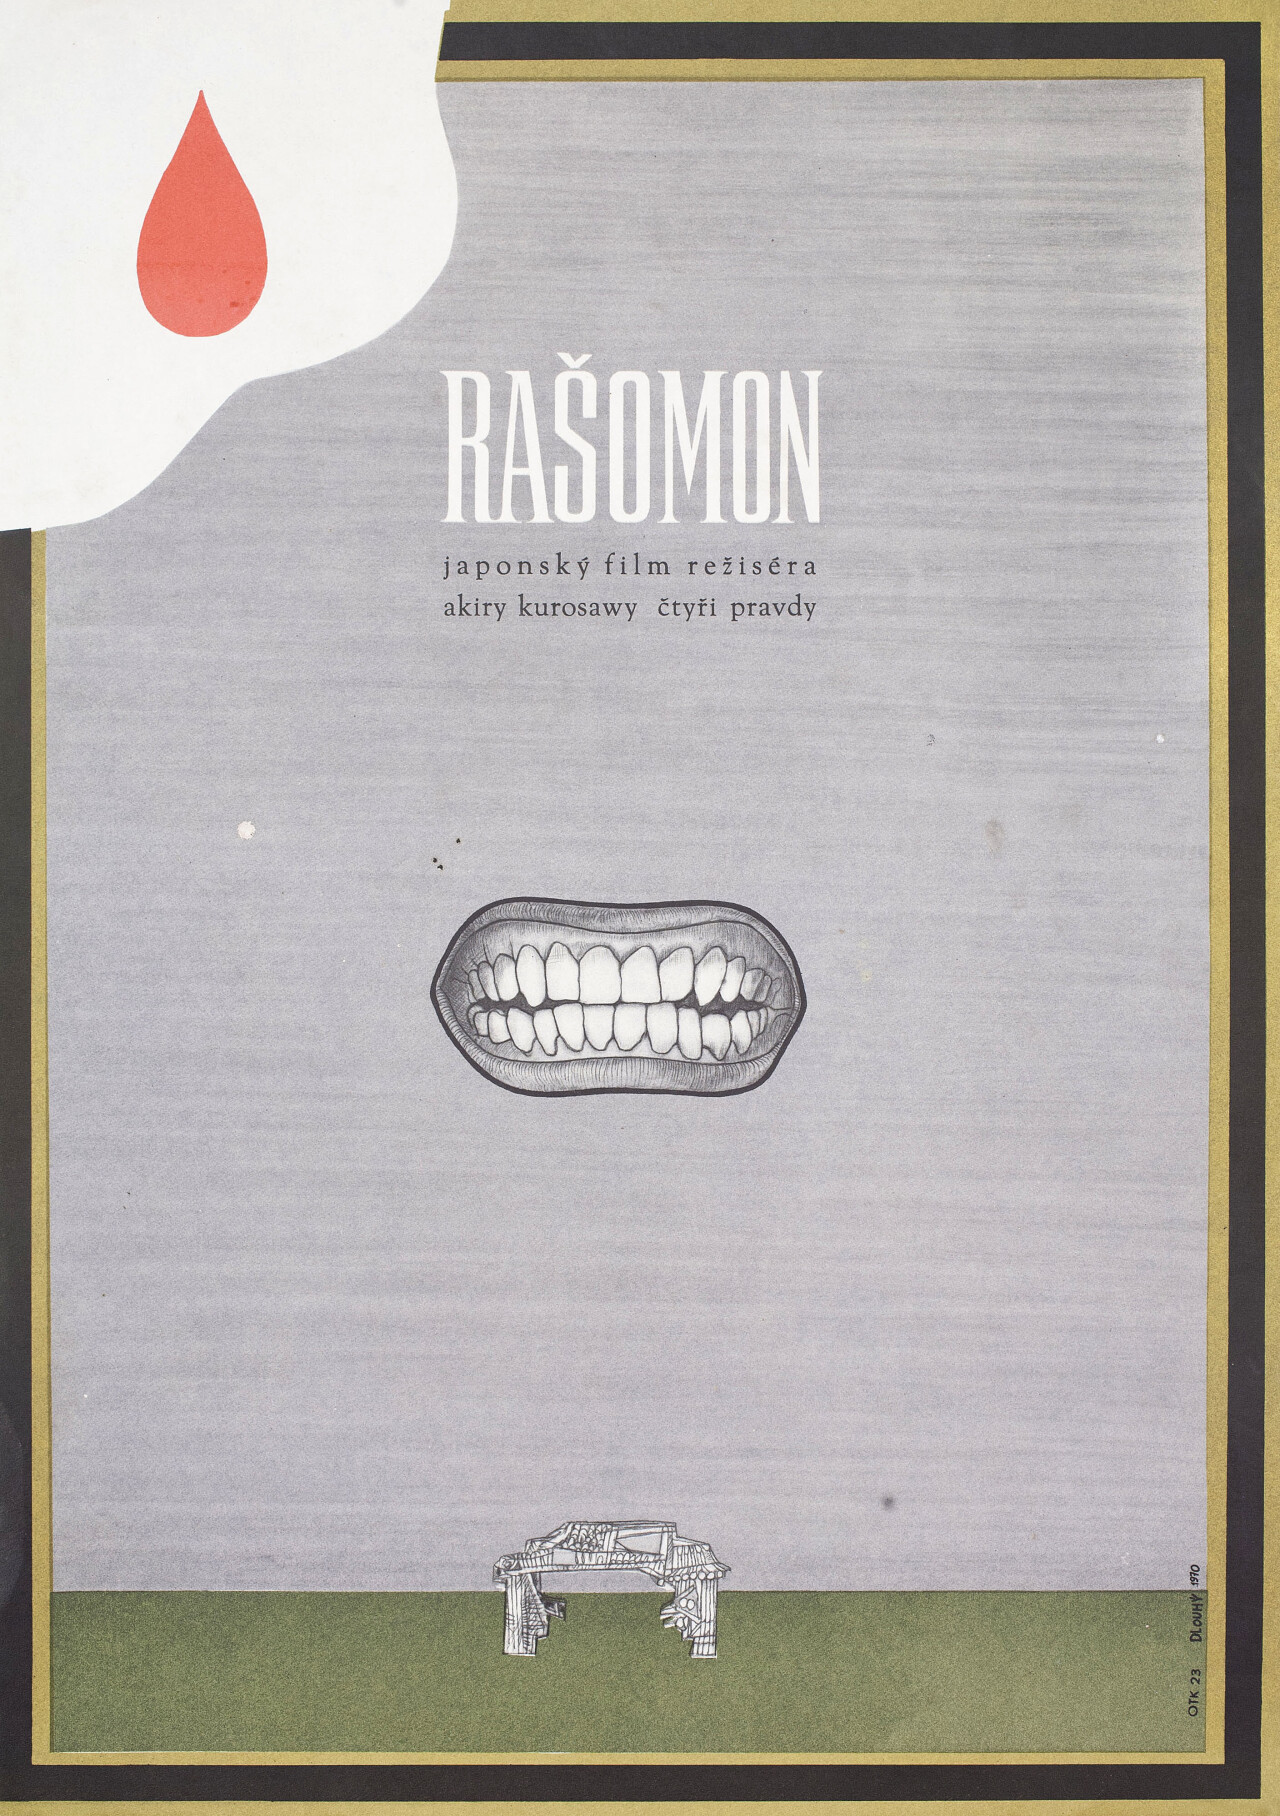 Расёмон (Rashomon, 1950), режиссёр Акира Куросава, минималистичный постер к фильму (Чехословакия, 1970 год), автор Длоуи